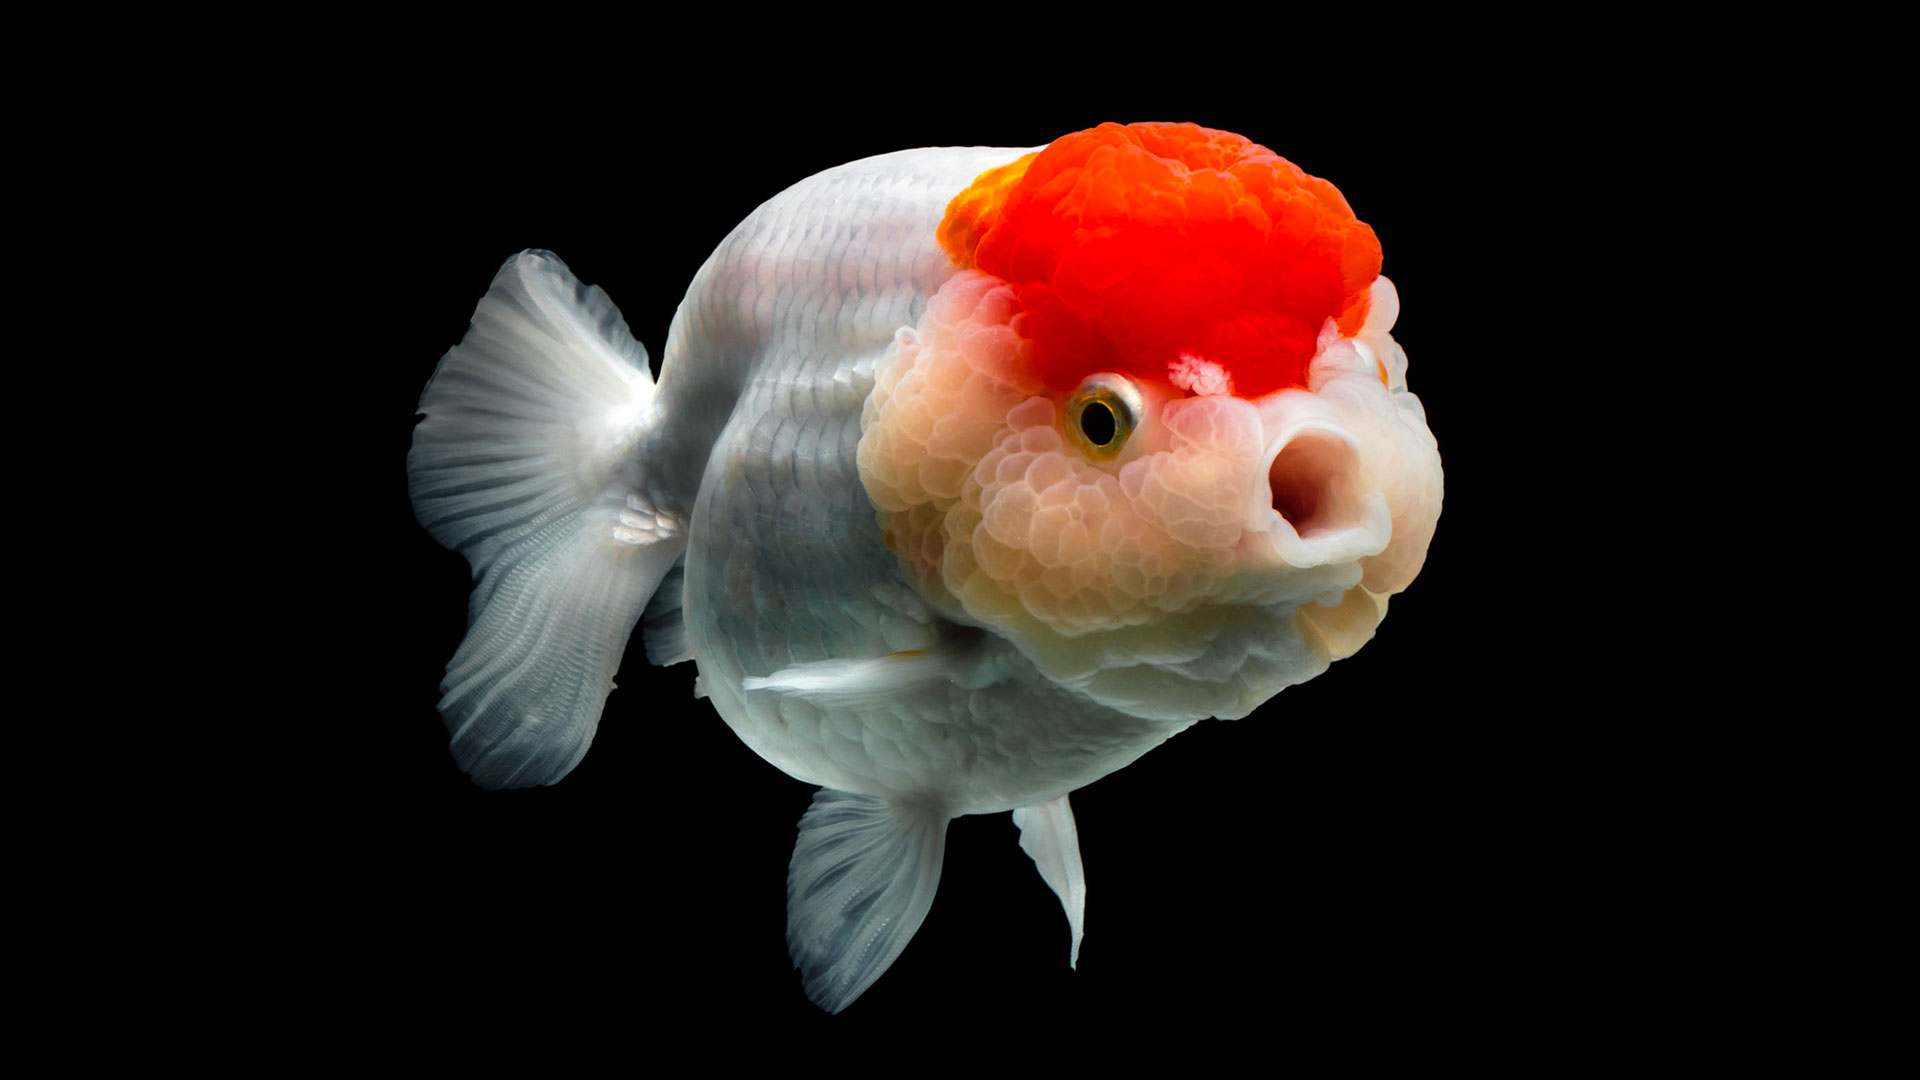 Le poisson rouge – Carassius auratus – Association Française du